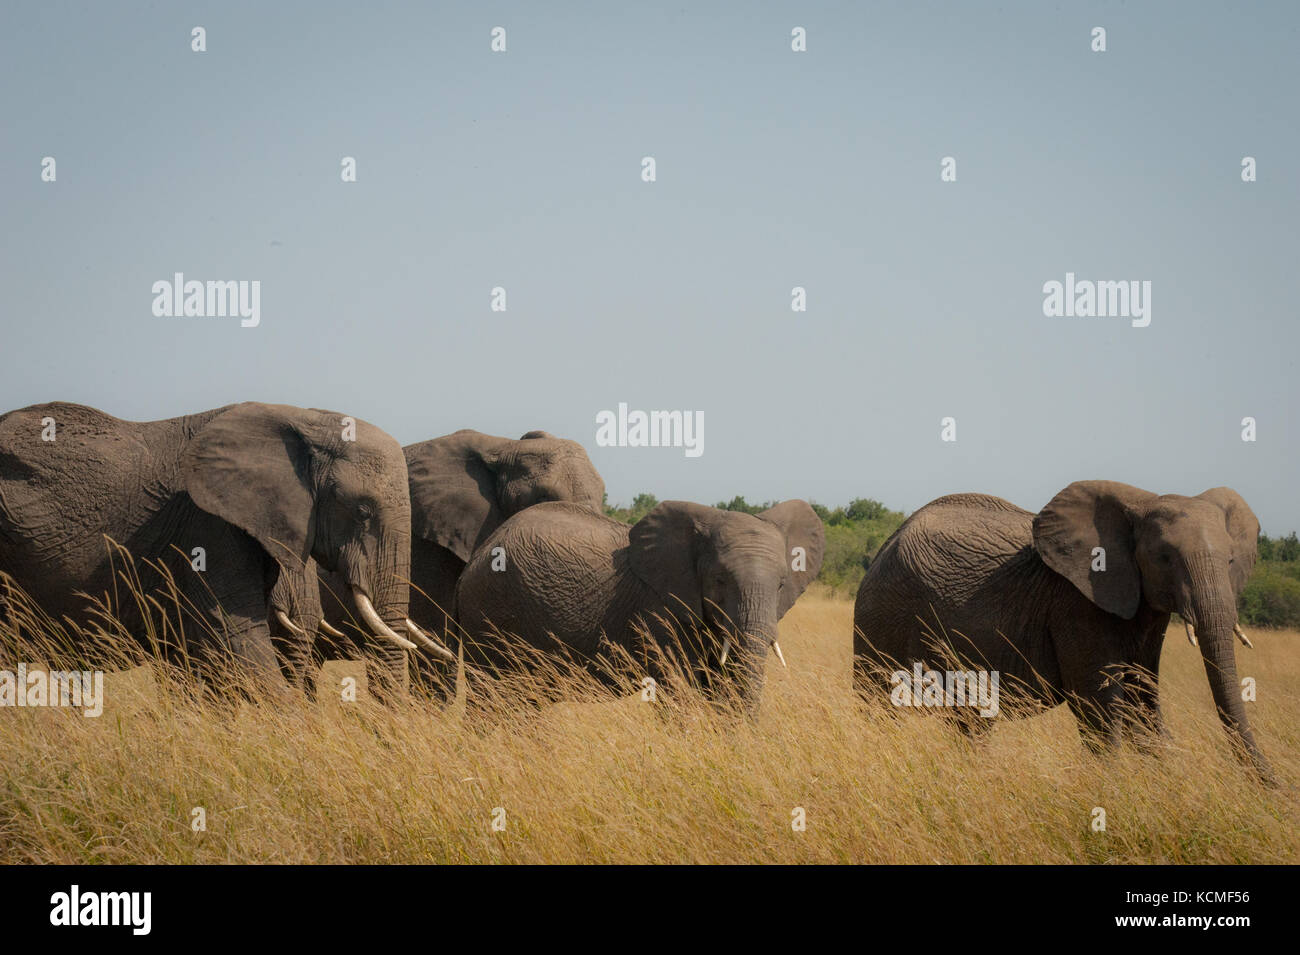 A family of elephants in the savannah, Masai Mara, Kenya Stock Photo